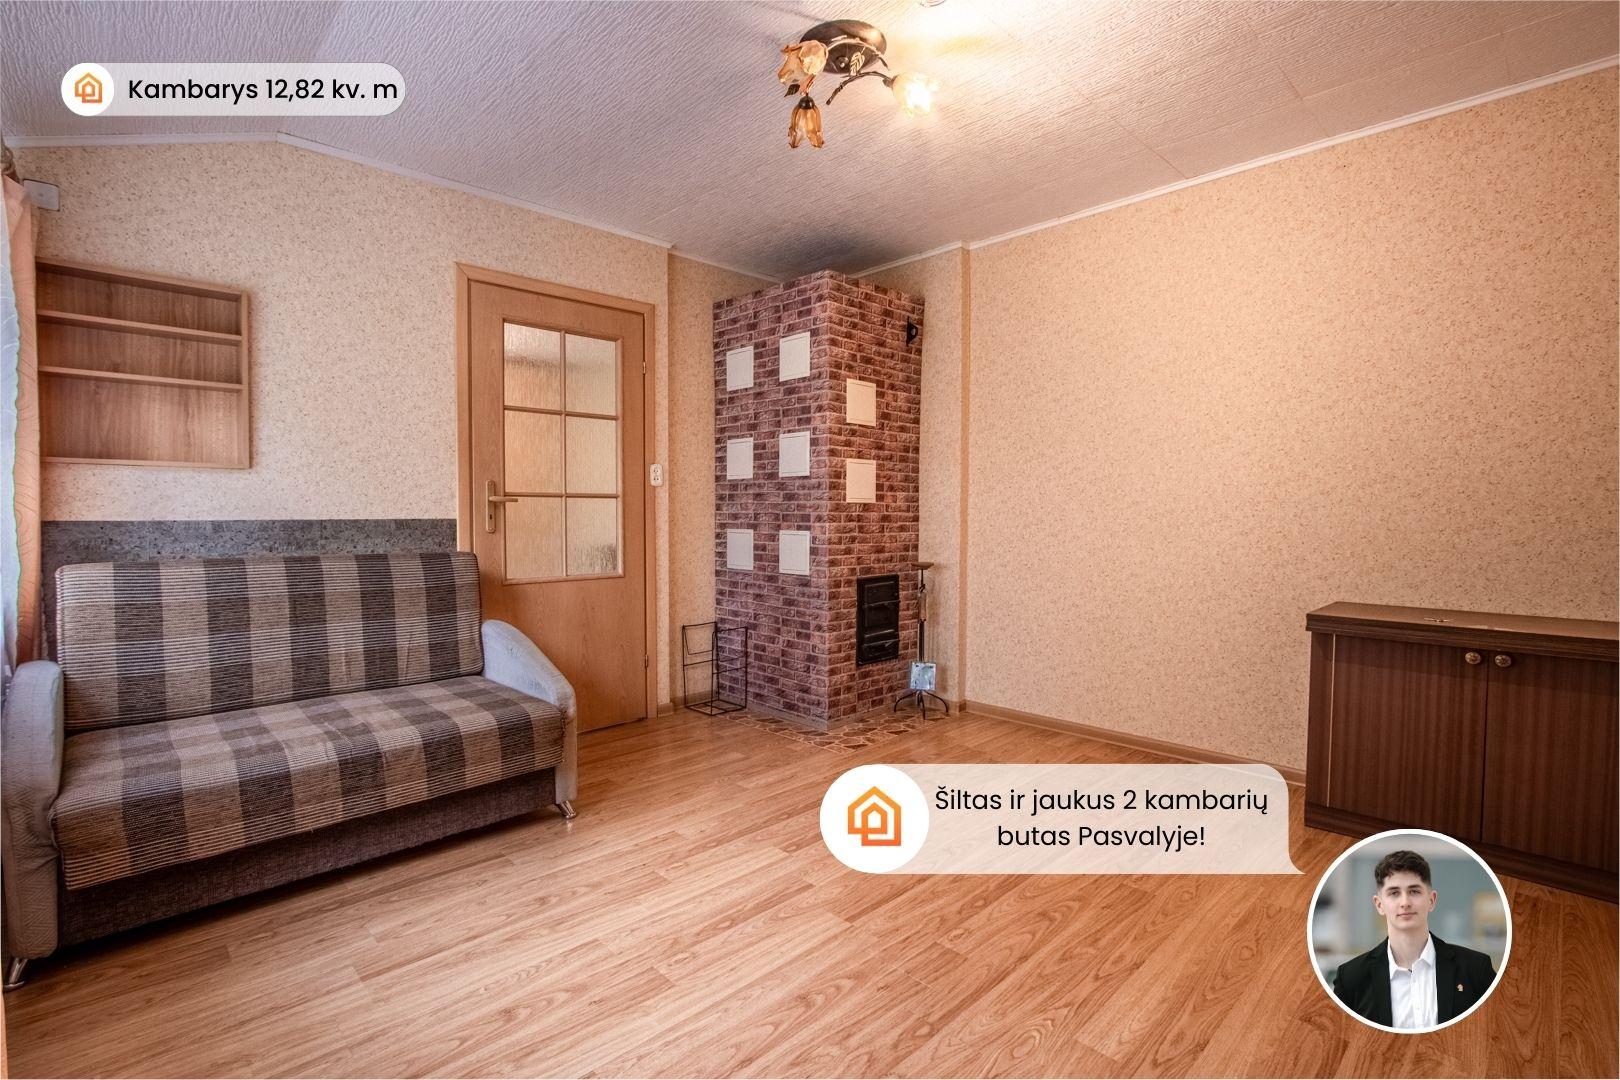 Parduodamas kompaktiškas 2 kambarių butas Biržų g. 95-2, Pasvalyje, kuriame galėsite gyventi su mažais išlaikymo kaštais!